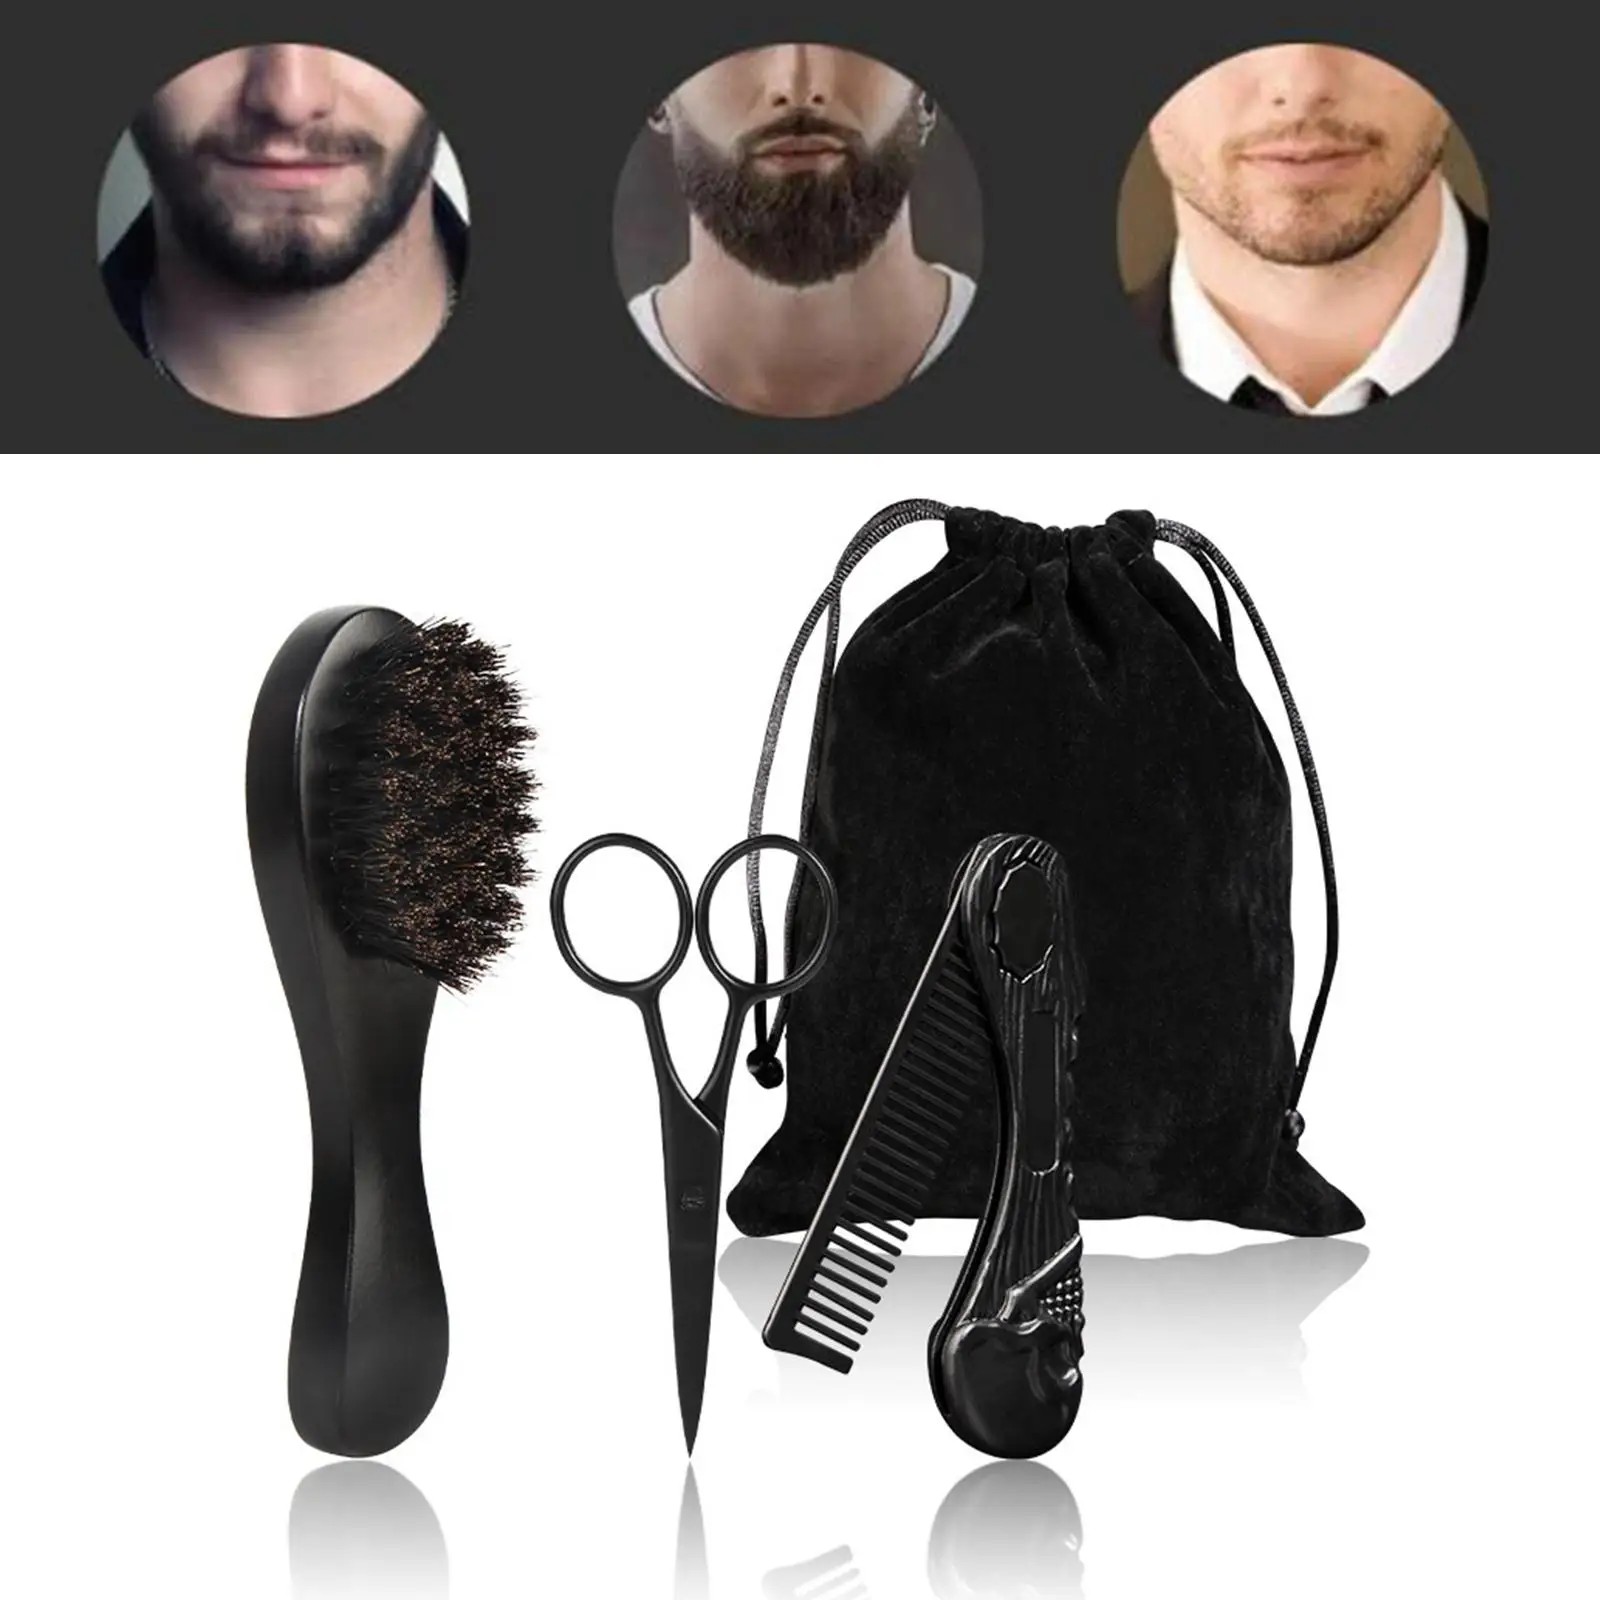 3Pcs Professional Beard Care Kit for Men Wooden Gift Pocket Comb Mustache Scissors Brush for Men`s Travel Home